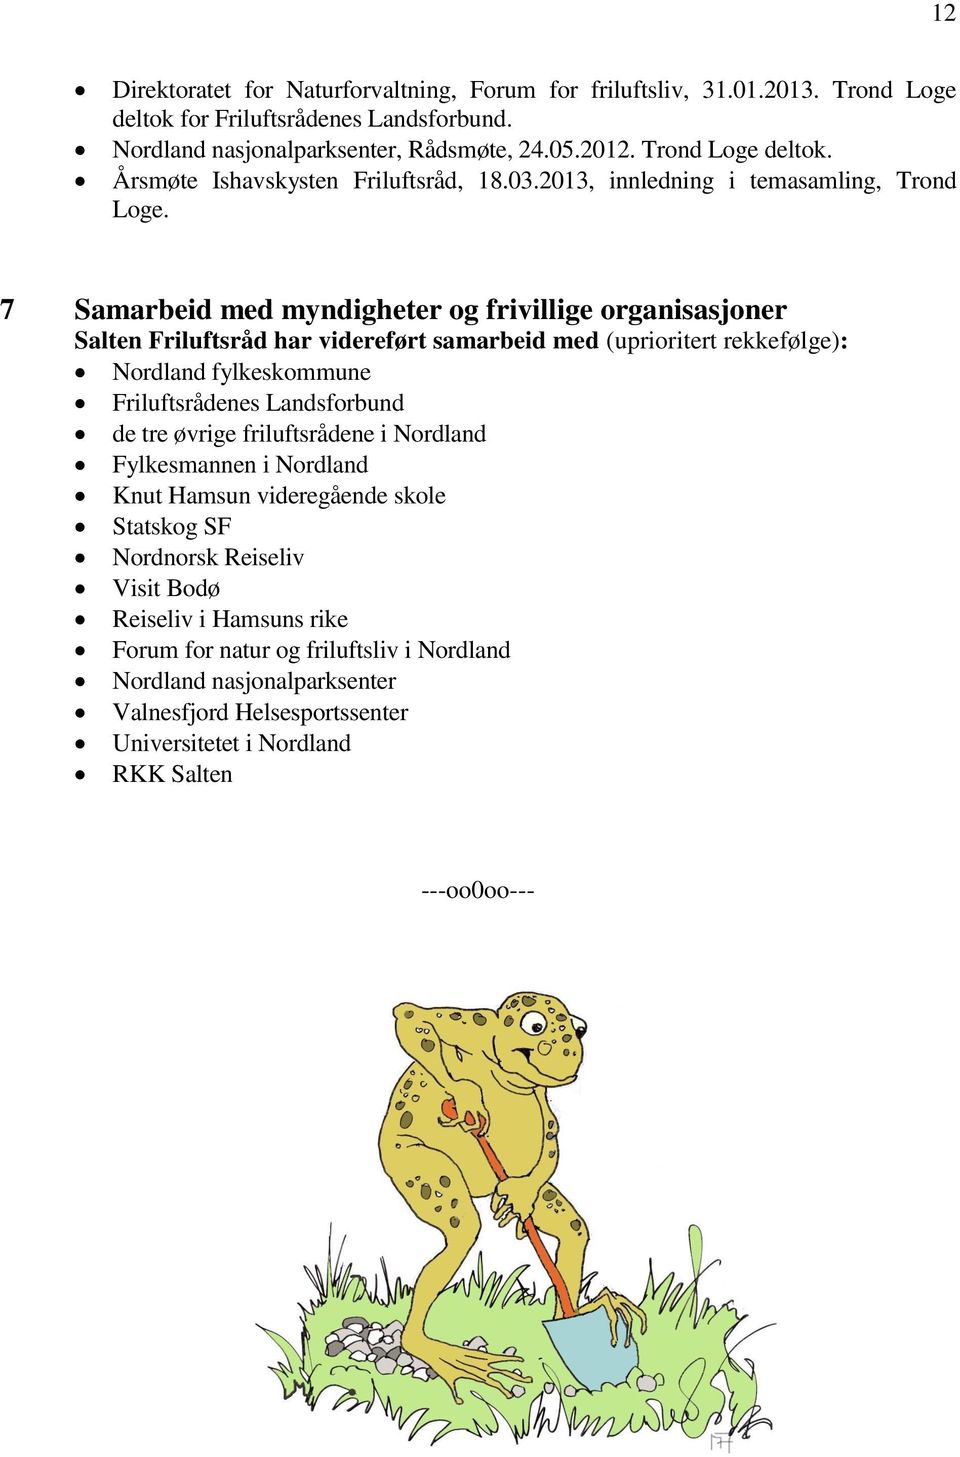 7 Samarbeid med myndigheter og frivillige organisasjoner Salten Friluftsråd har videreført samarbeid med (uprioritert rekkefølge): Nordland fylkeskommune Friluftsrådenes Landsforbund de tre